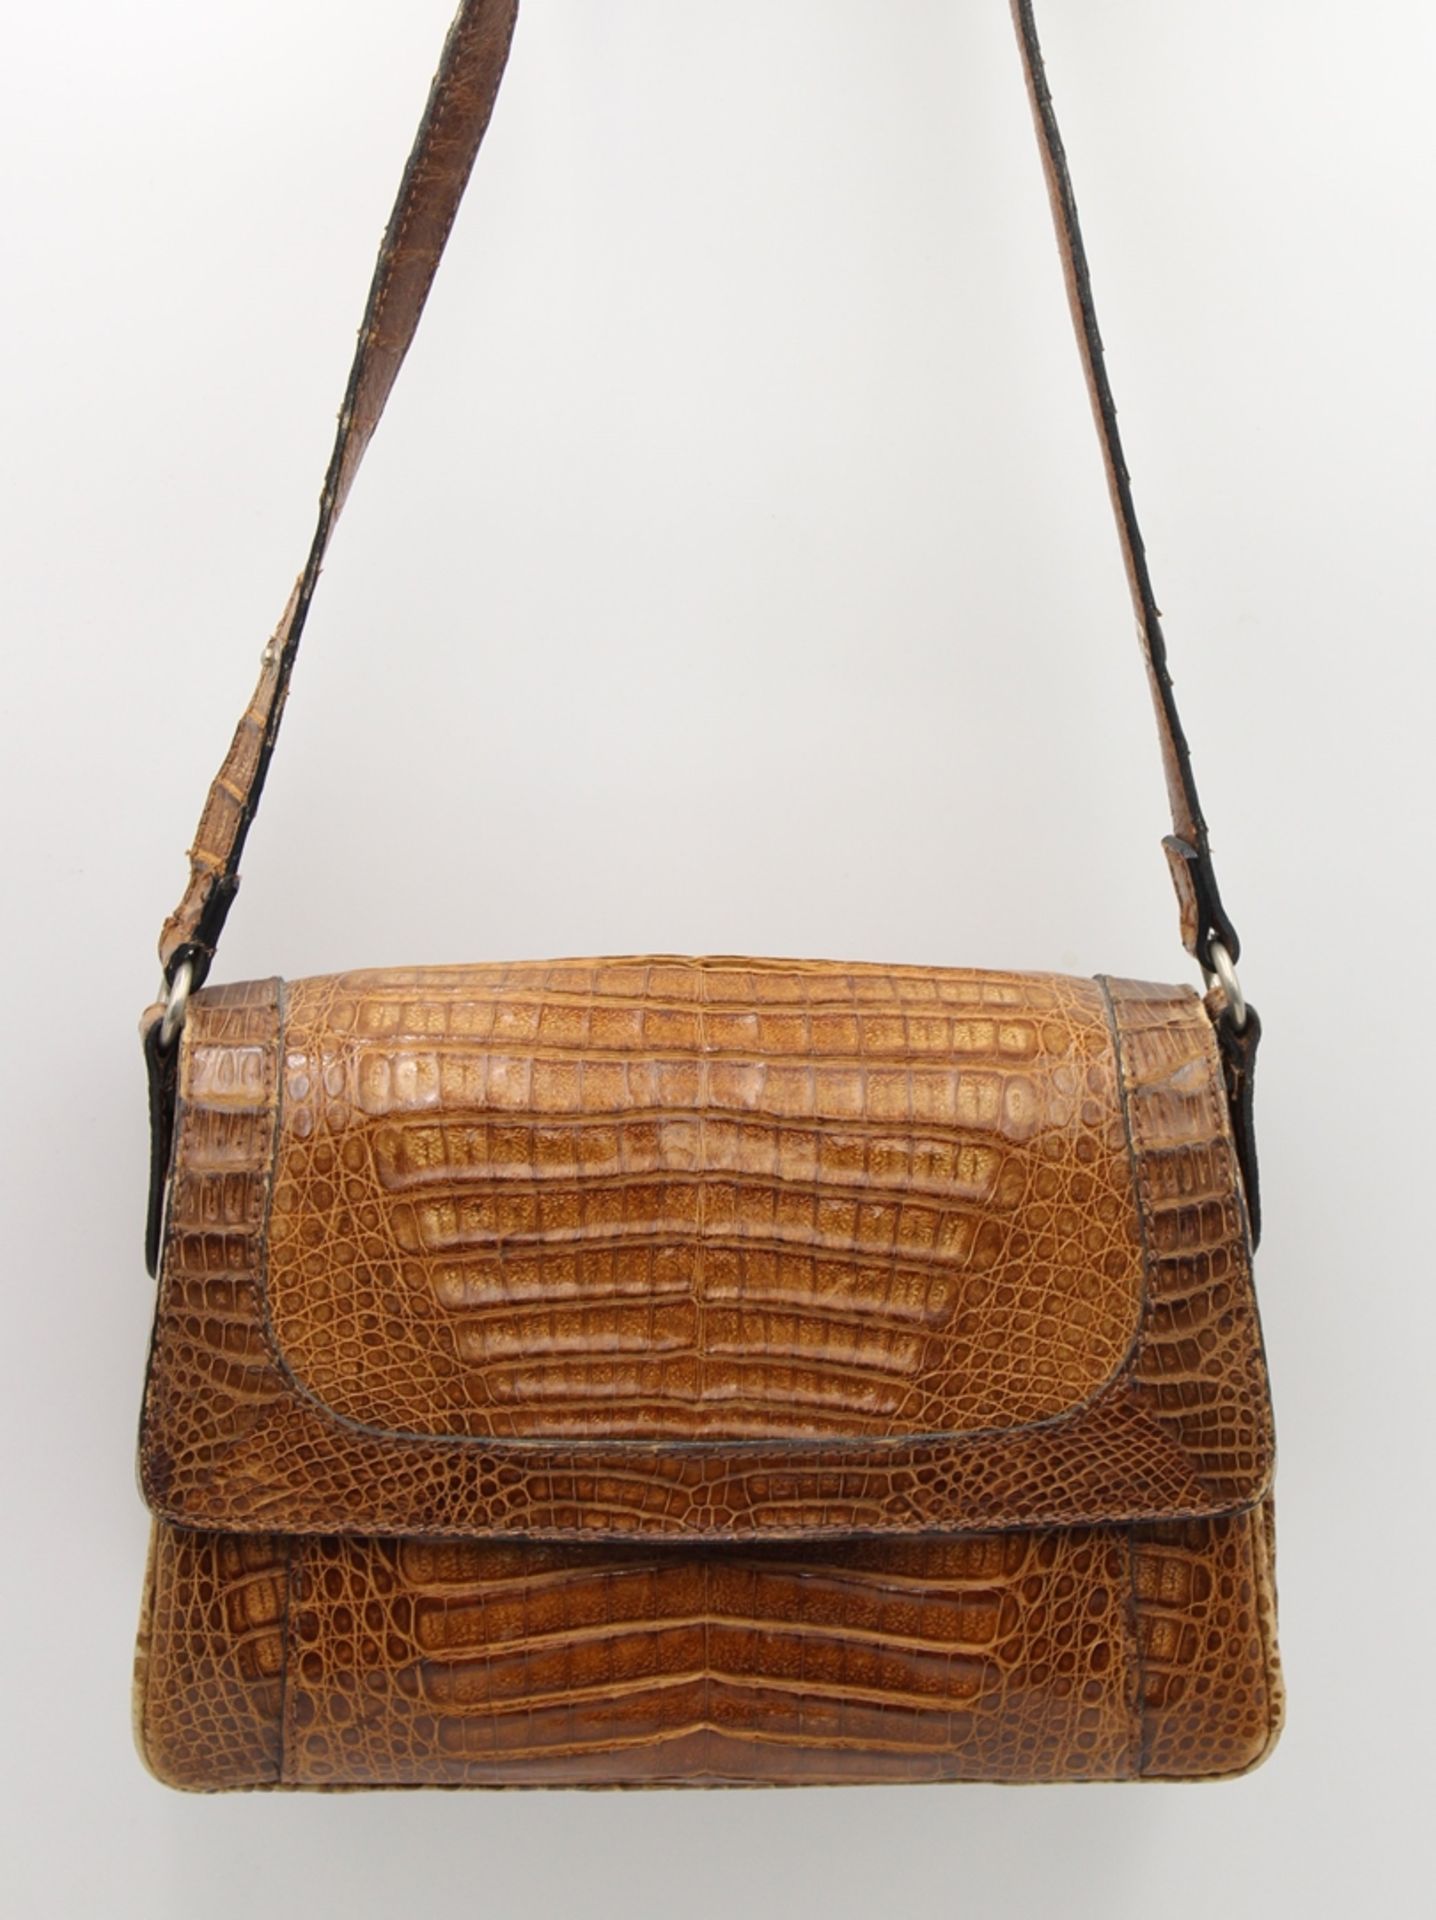 Damenhandtasche, Krokoleder, älter, Tragespuren, 20 x 26cm.